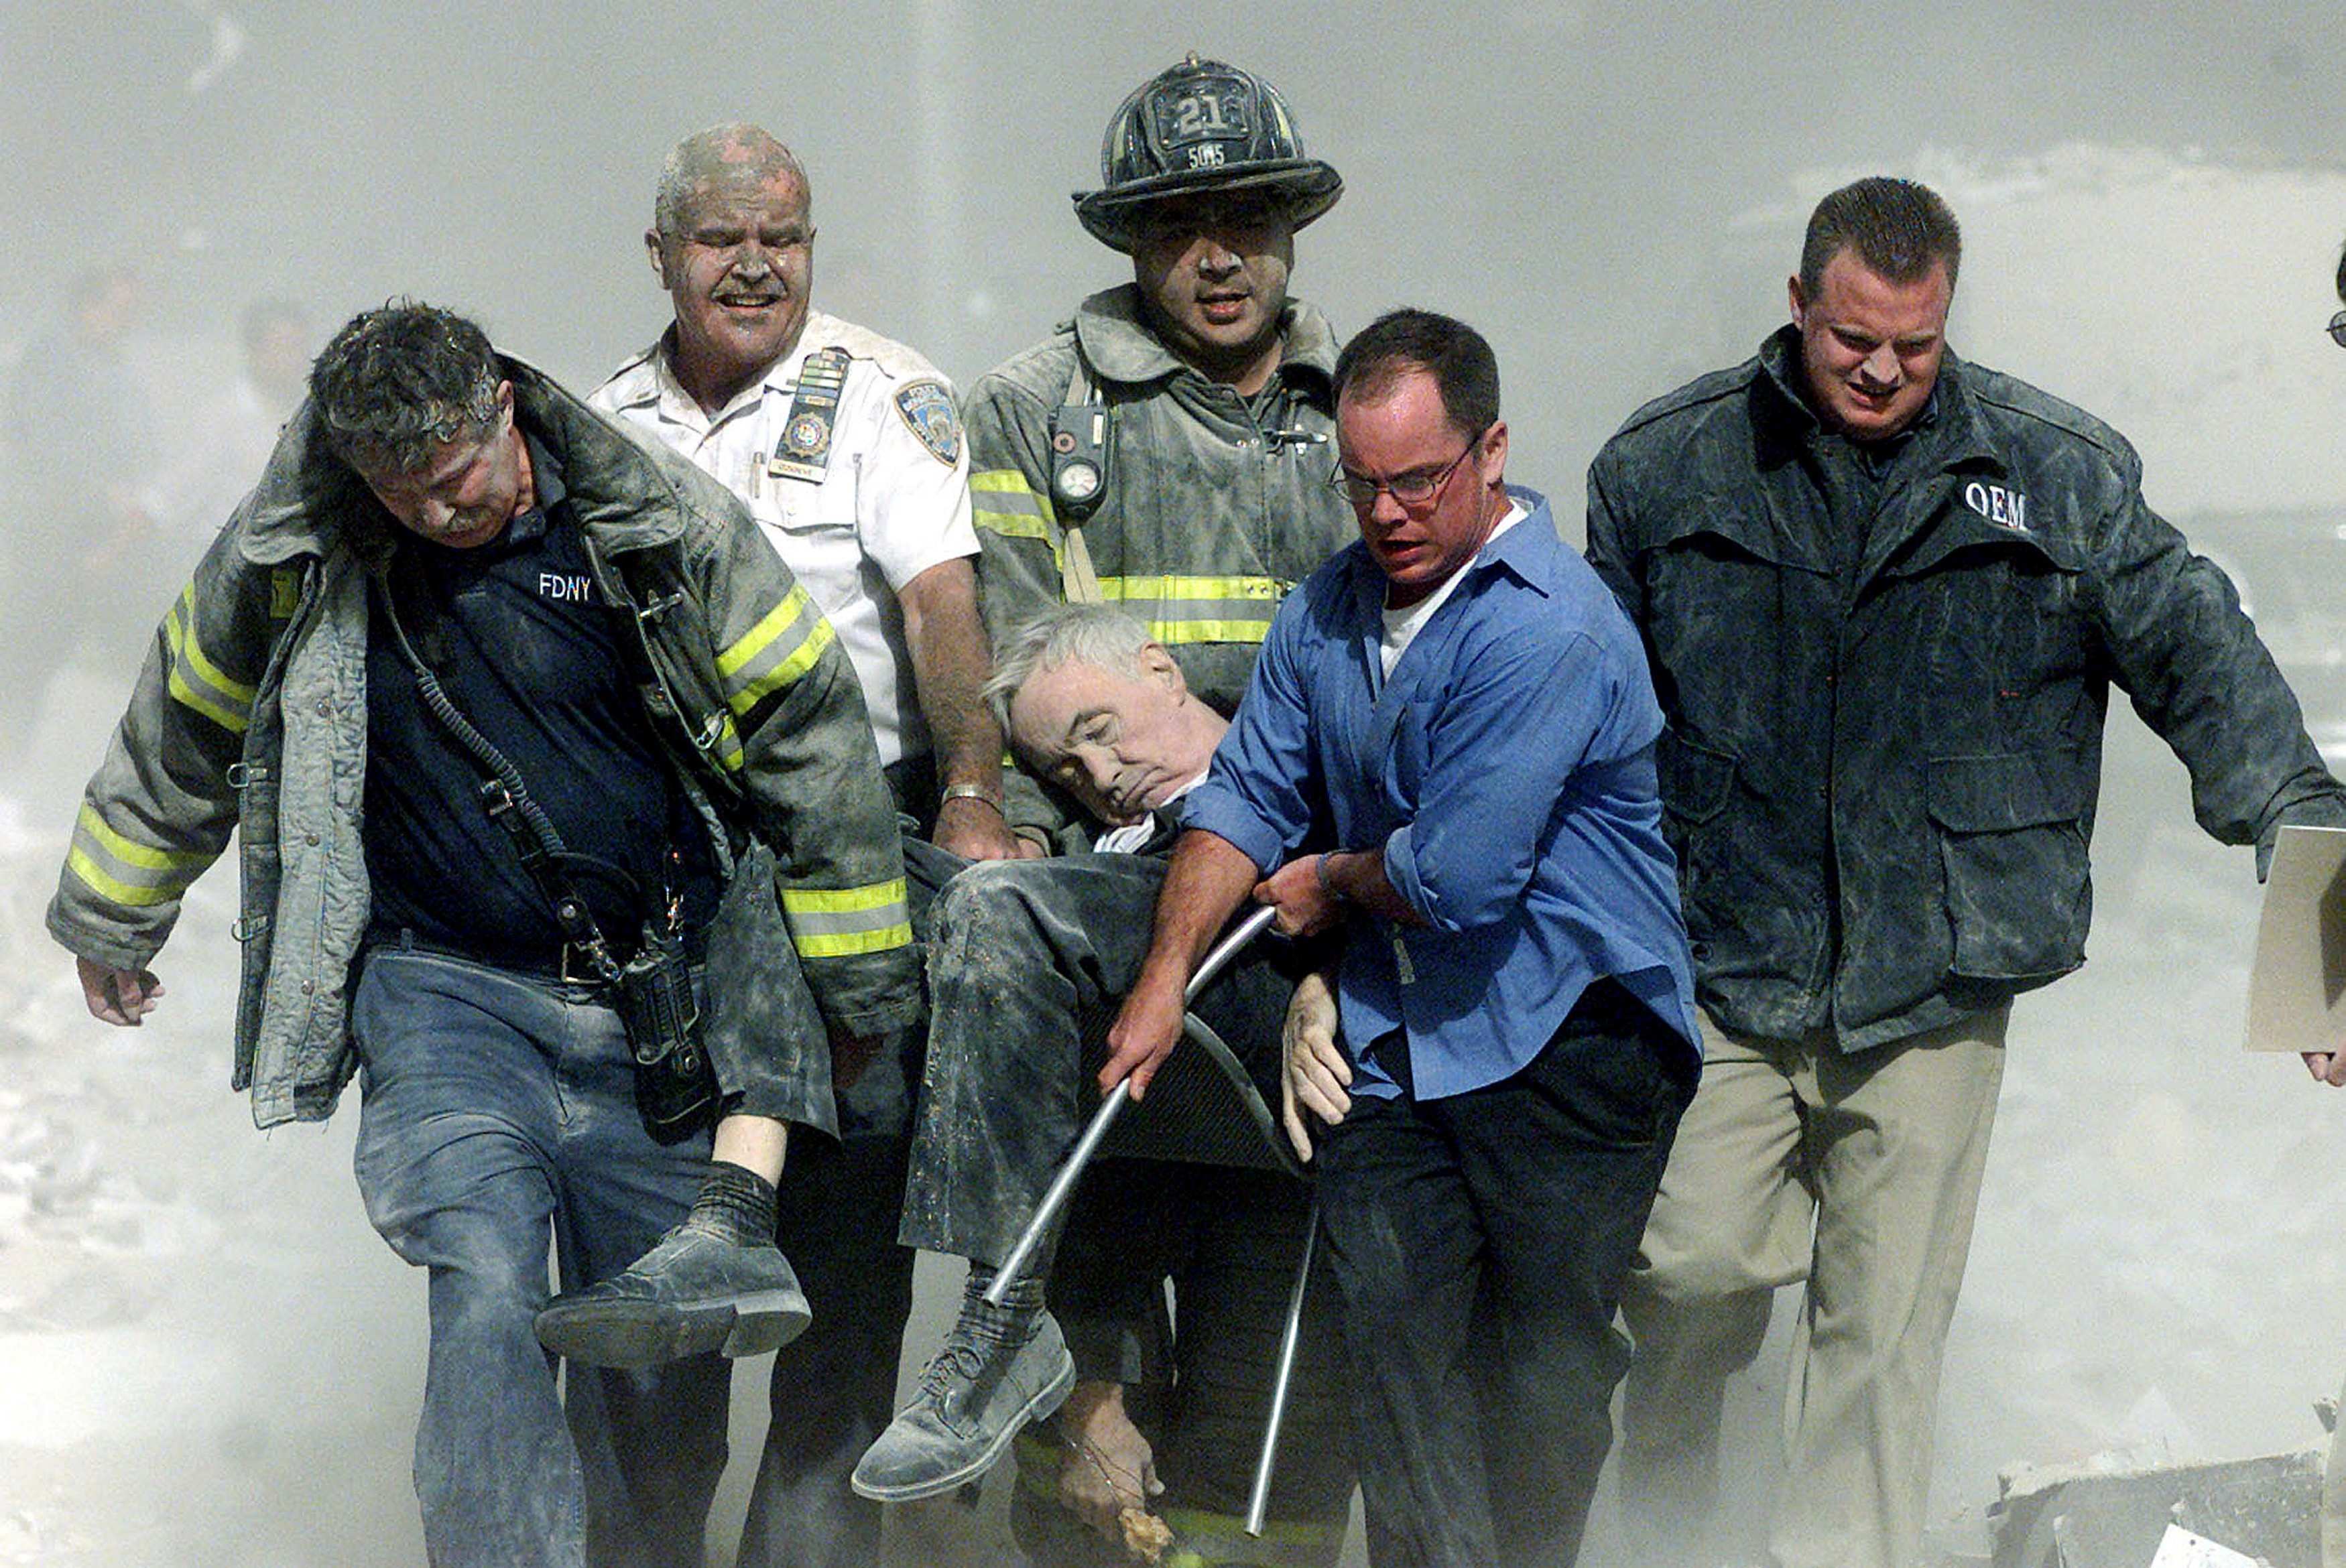 6 сентября 2008. Спасатели 11 сентября 2001. Теракт в Нью-Йорке 11 сентября 2001. Башни Близнецы 11 сентября жертвы. Число погибших 11 сентября 2001.